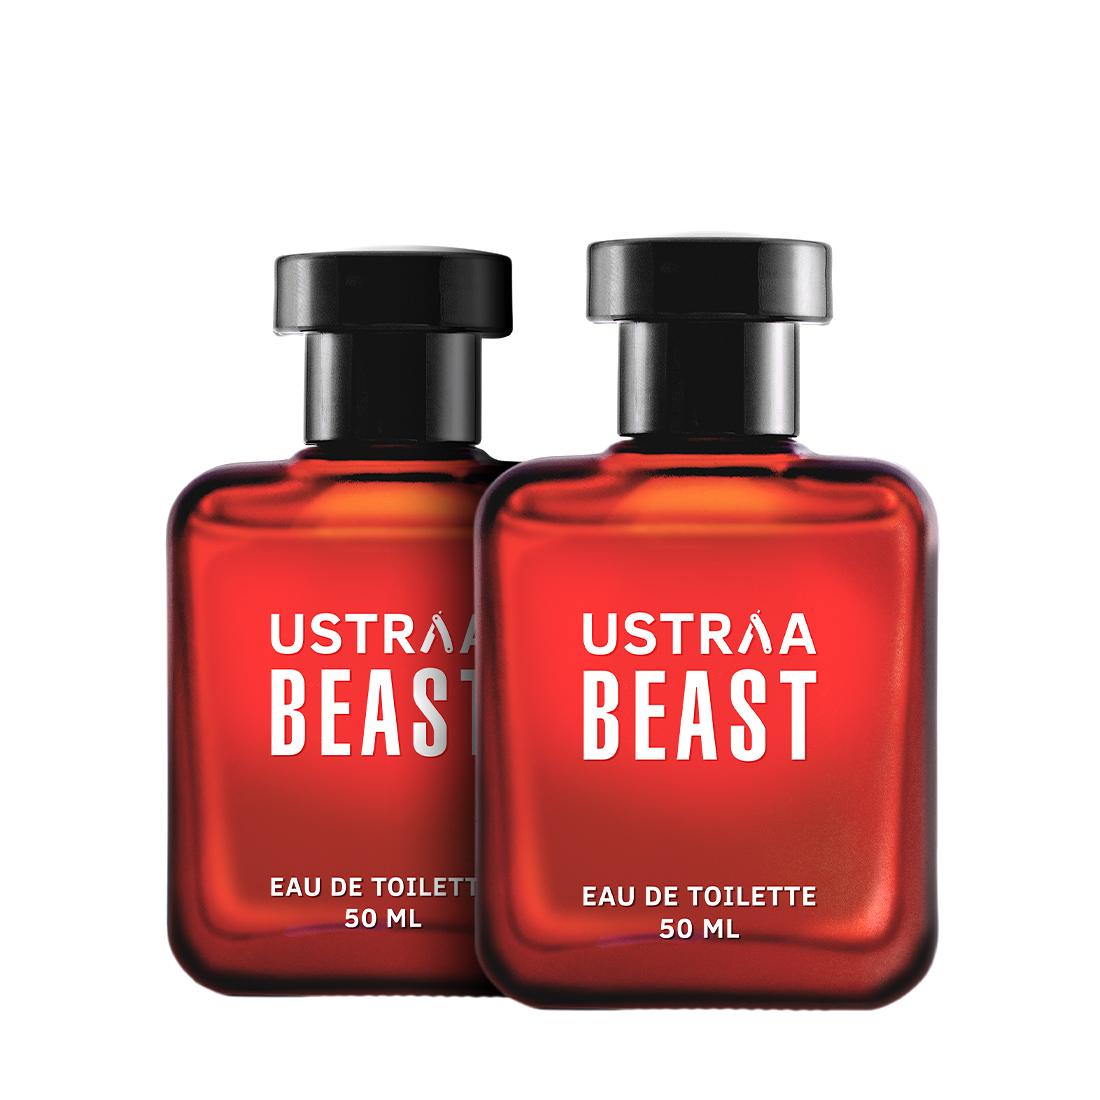 Ustraa Beast EDT 50ml - Perfume for Men